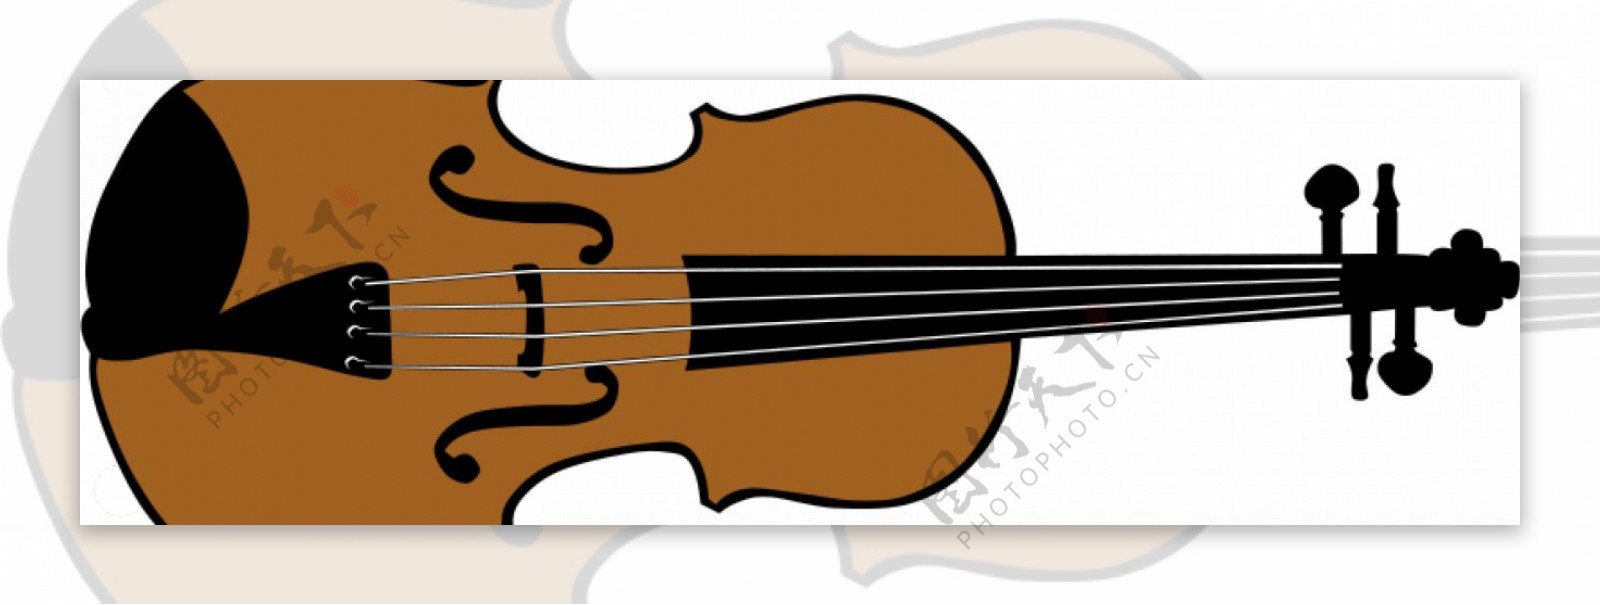 在矢量格式的小提琴图像